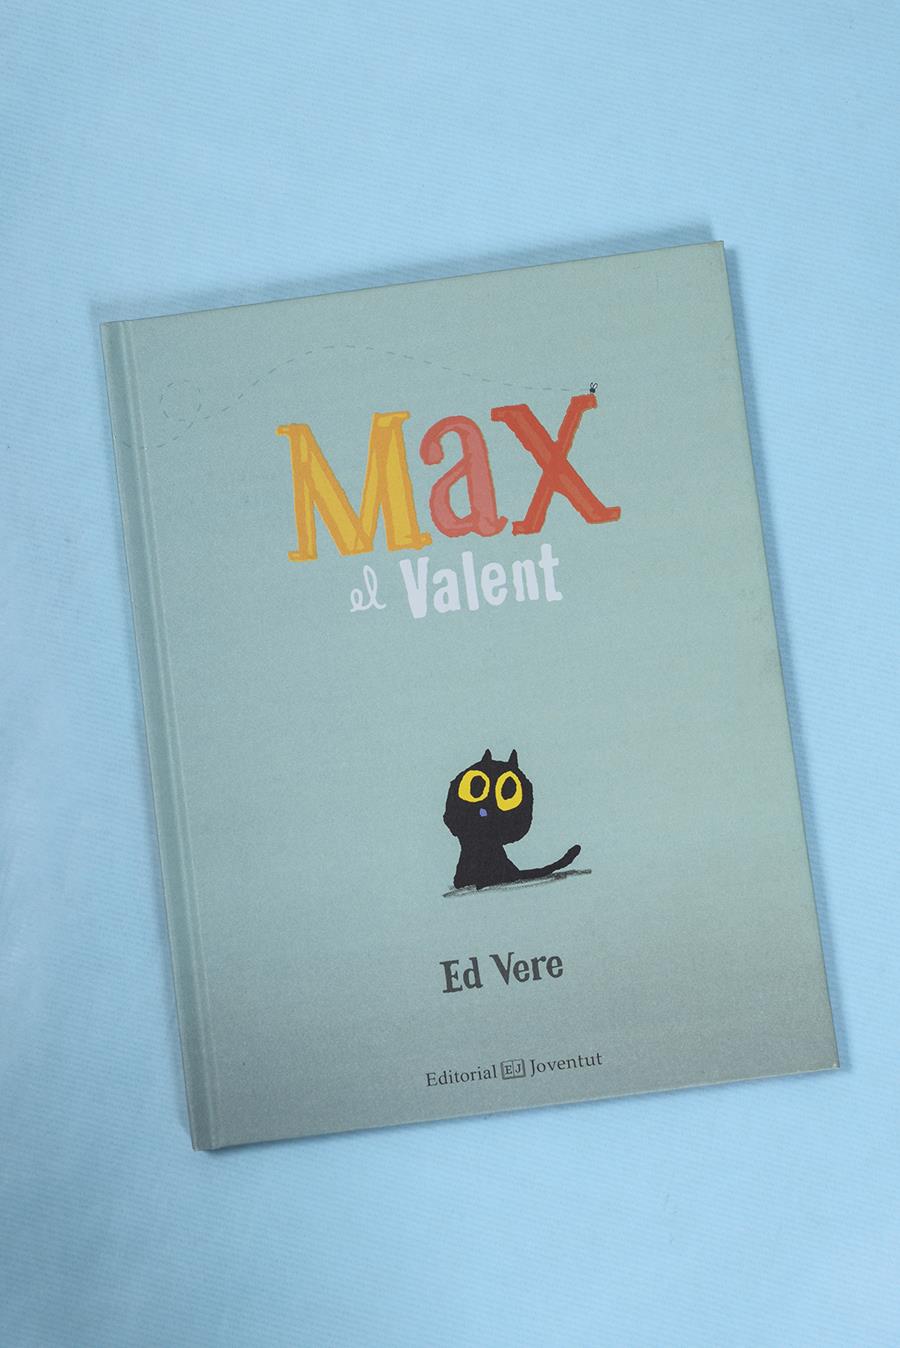 Max el Valent | 978-84-261-4072-2 | Ed Vere